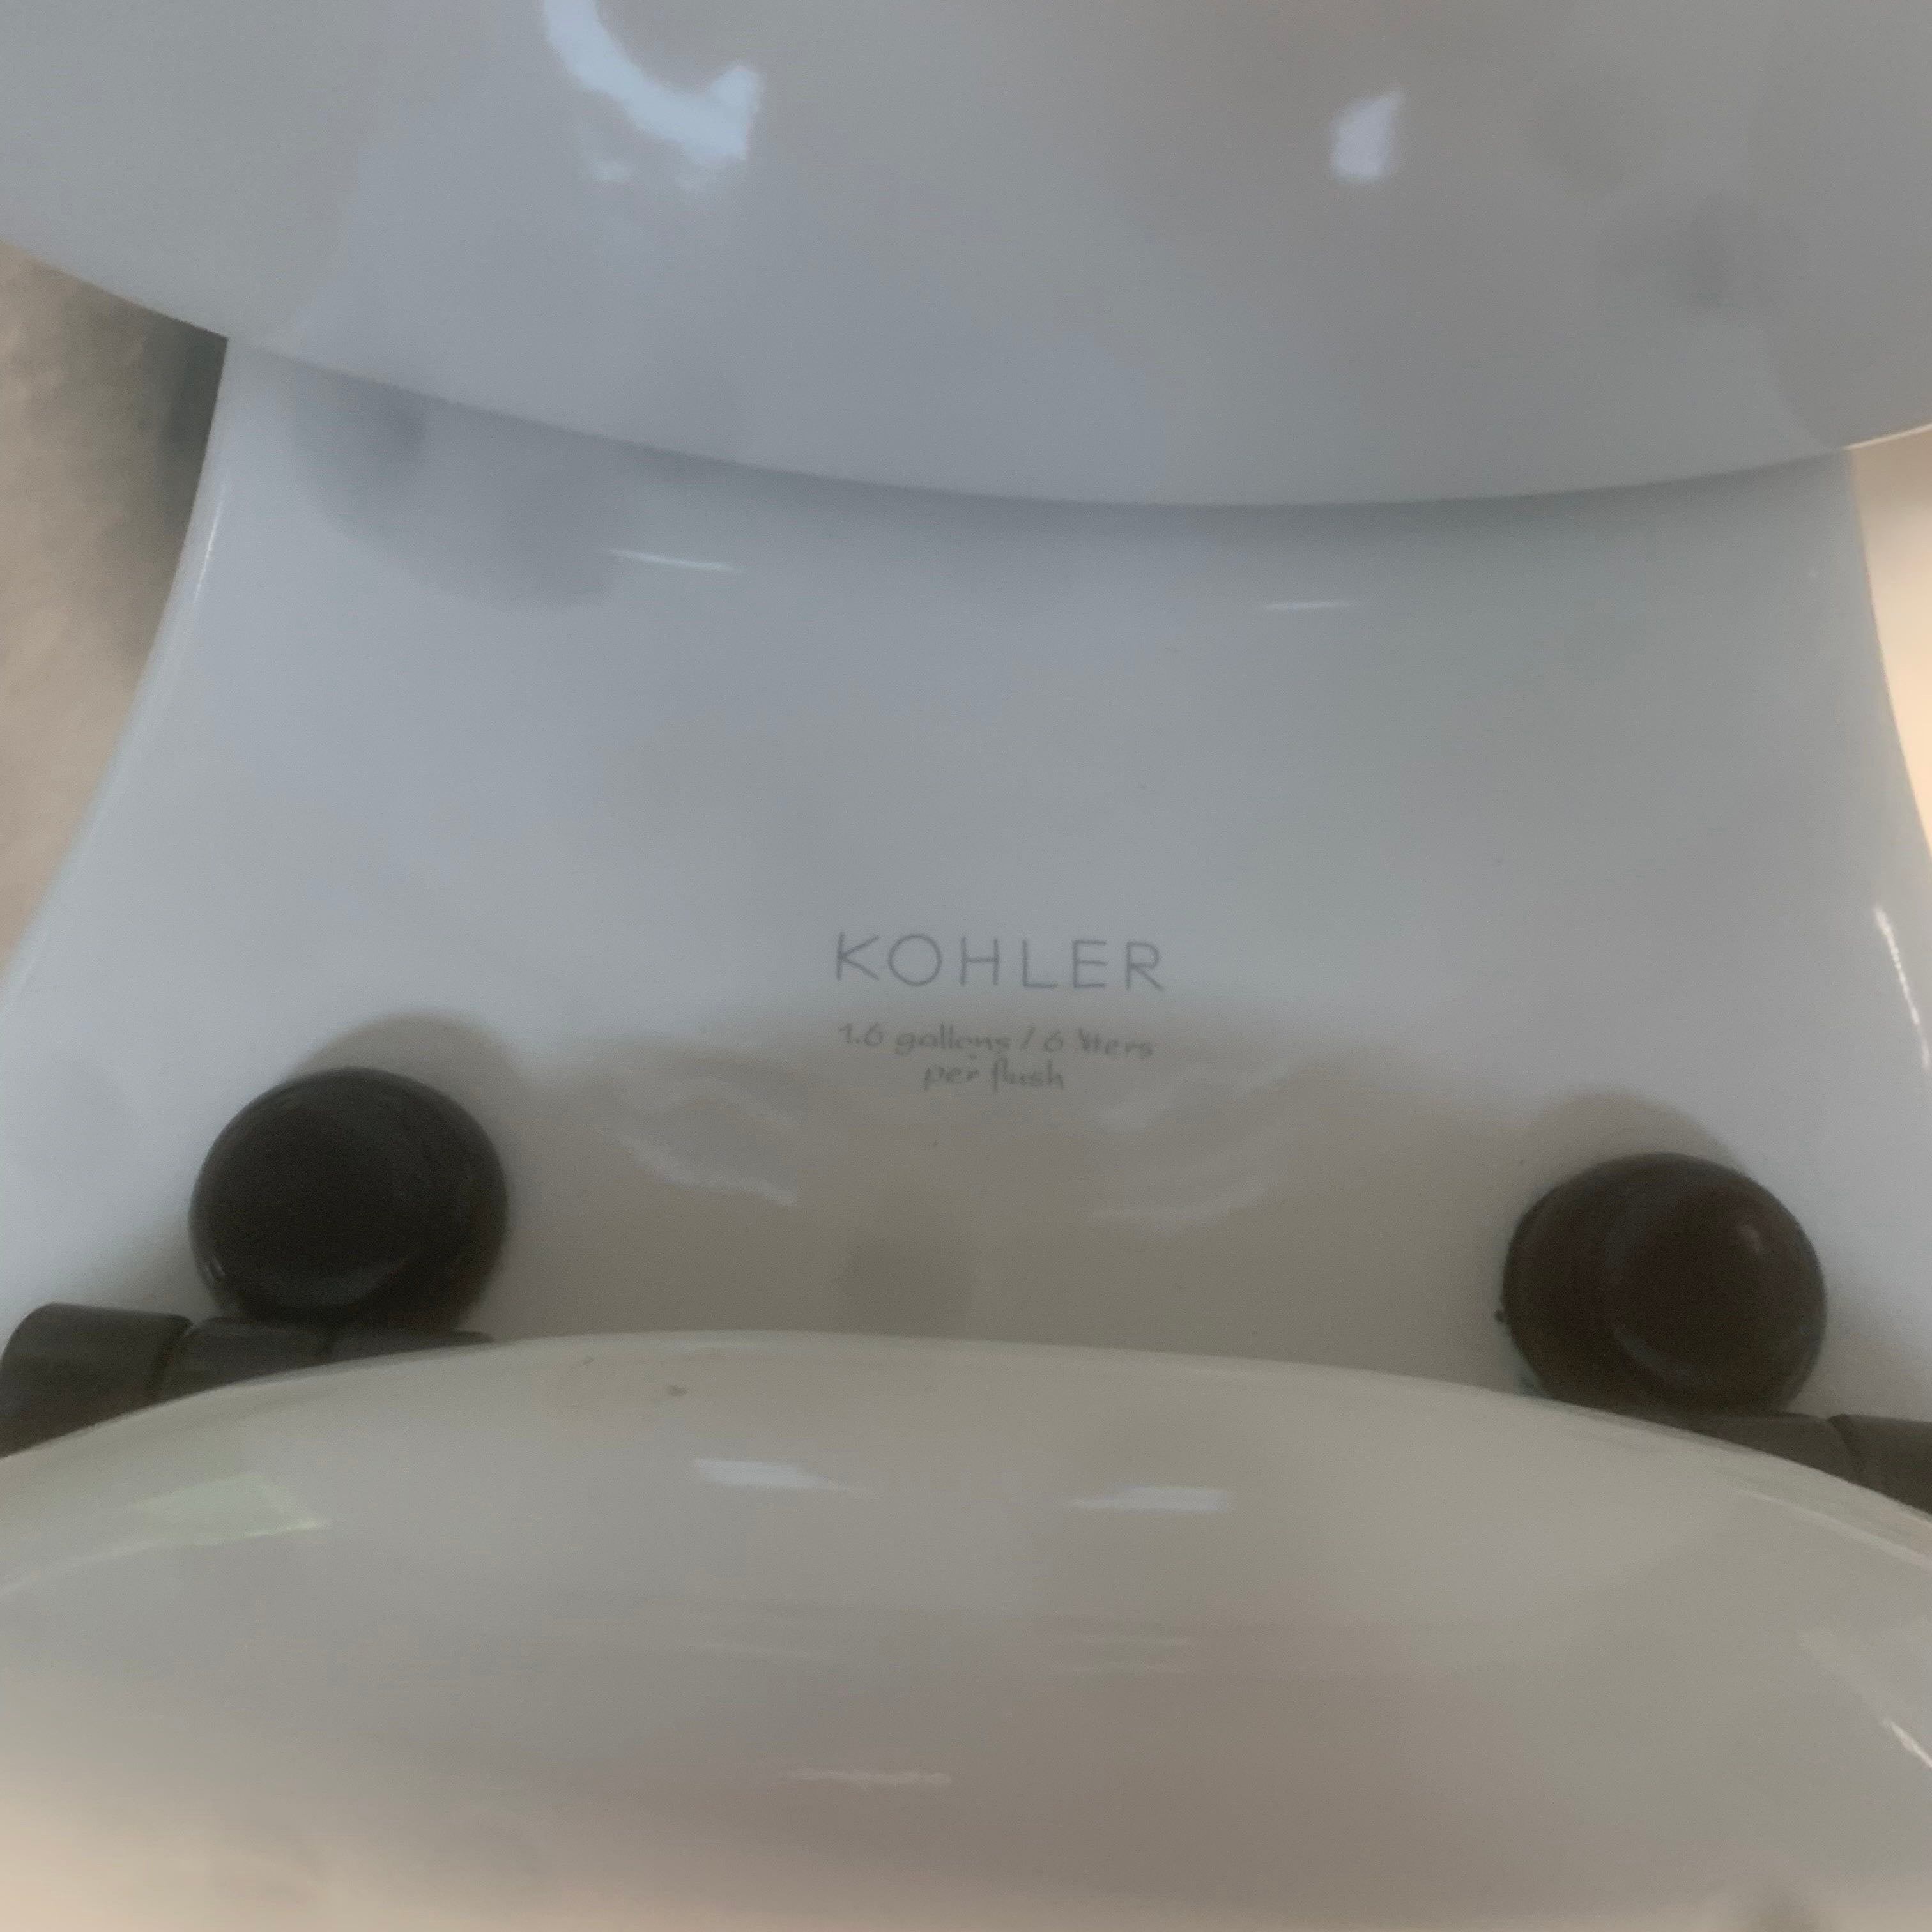 Kohler 1.6 Gallons Per Flush High Performance Toilet